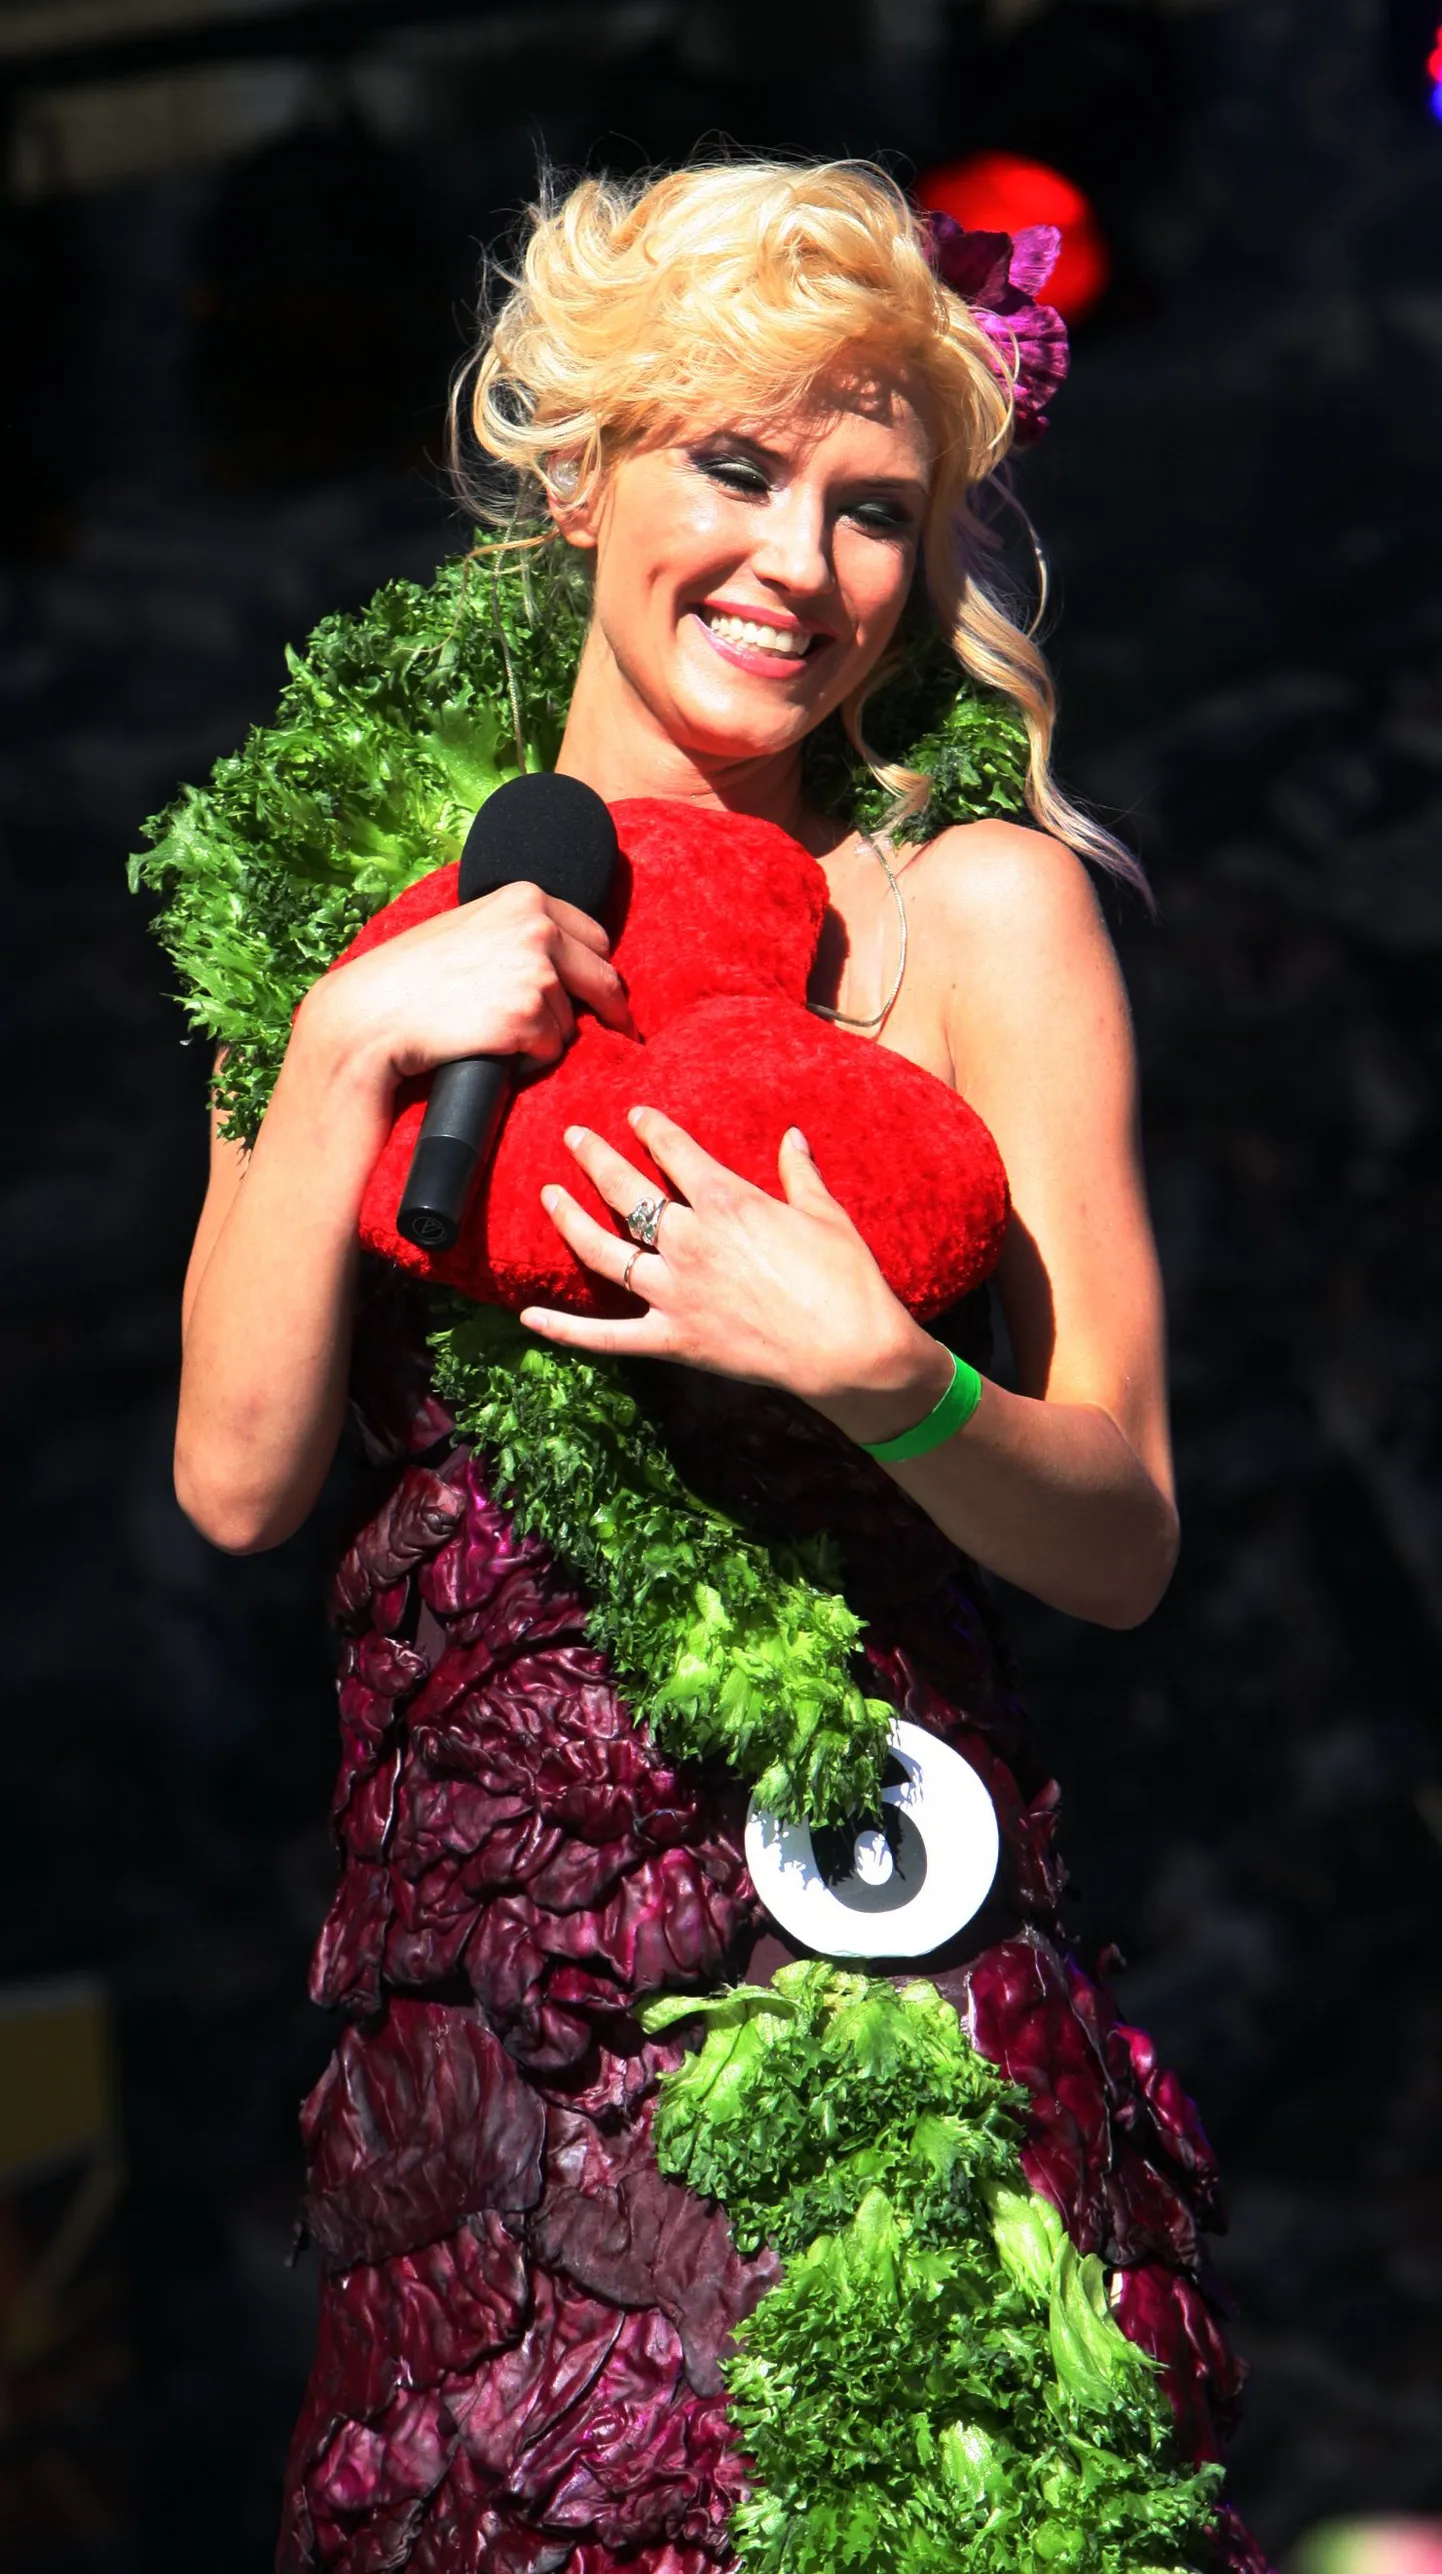 Lilleball 2011 Tallinna vanalinnas. Kapsa-ja salatikleiti kandis Ithaka Maria Rahula, kes sai etteaste lõpuks tulipunase südame Farmi-Gabrielilt.